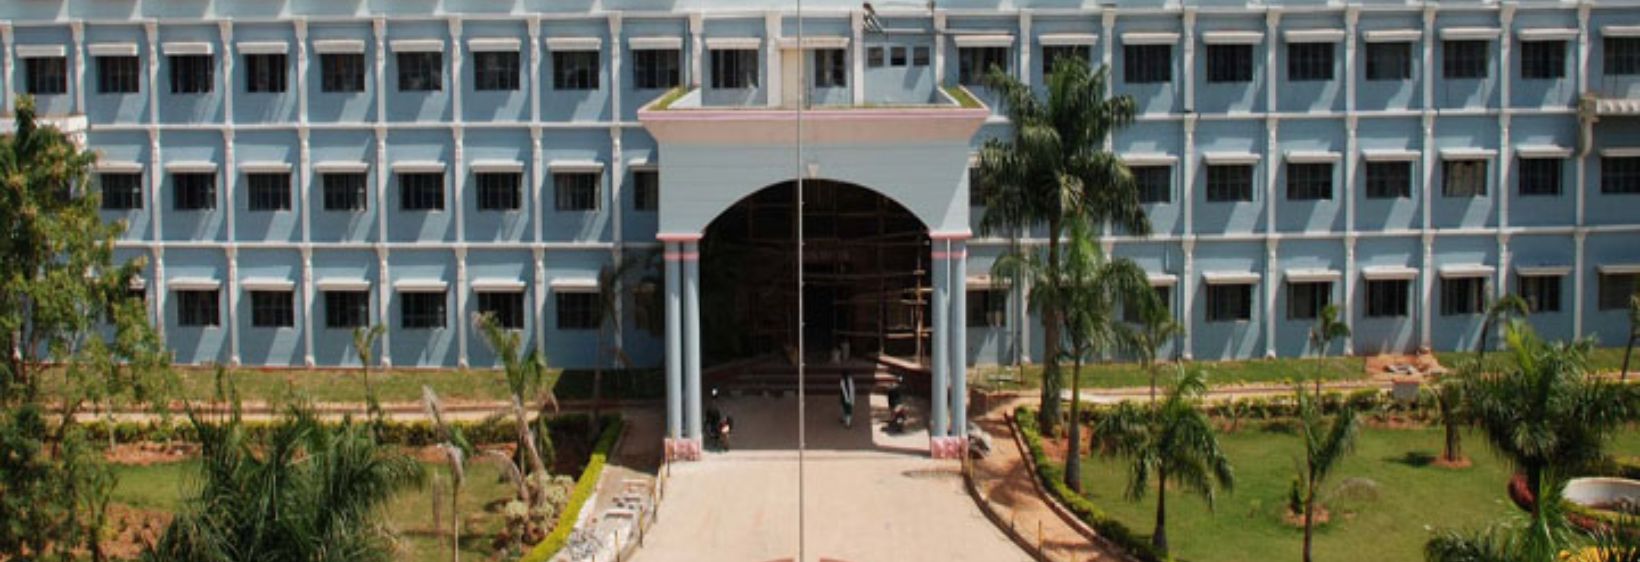 Sea College of Nursing - Bangalore